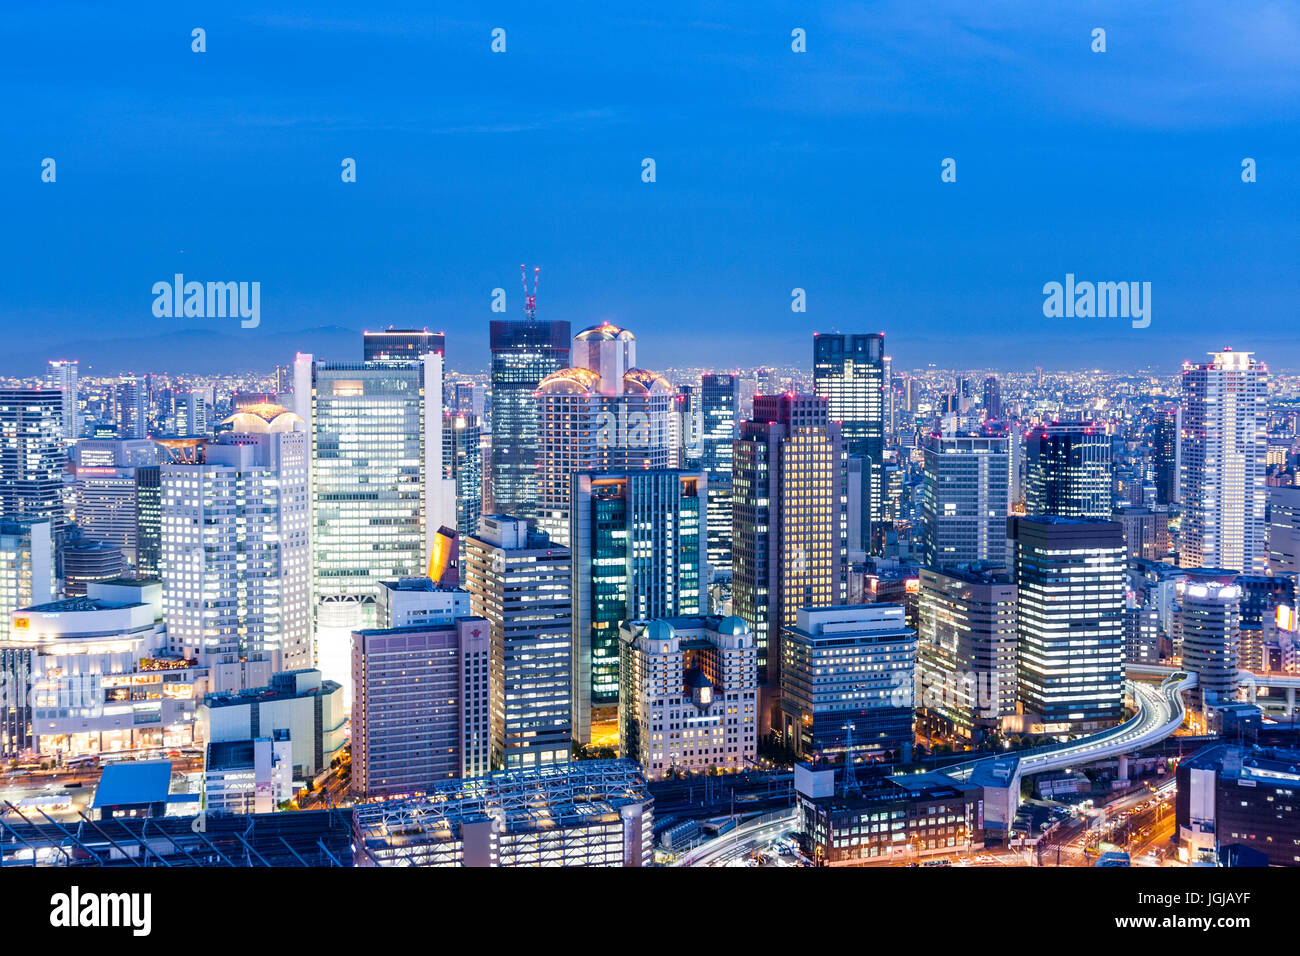 La Ville d'Osaka, au Japon. Temps de nuit high angle vue du haut des gratte-ciel Umeda. De tours de bureaux avec des montagnes en arrière-plan. Banque D'Images